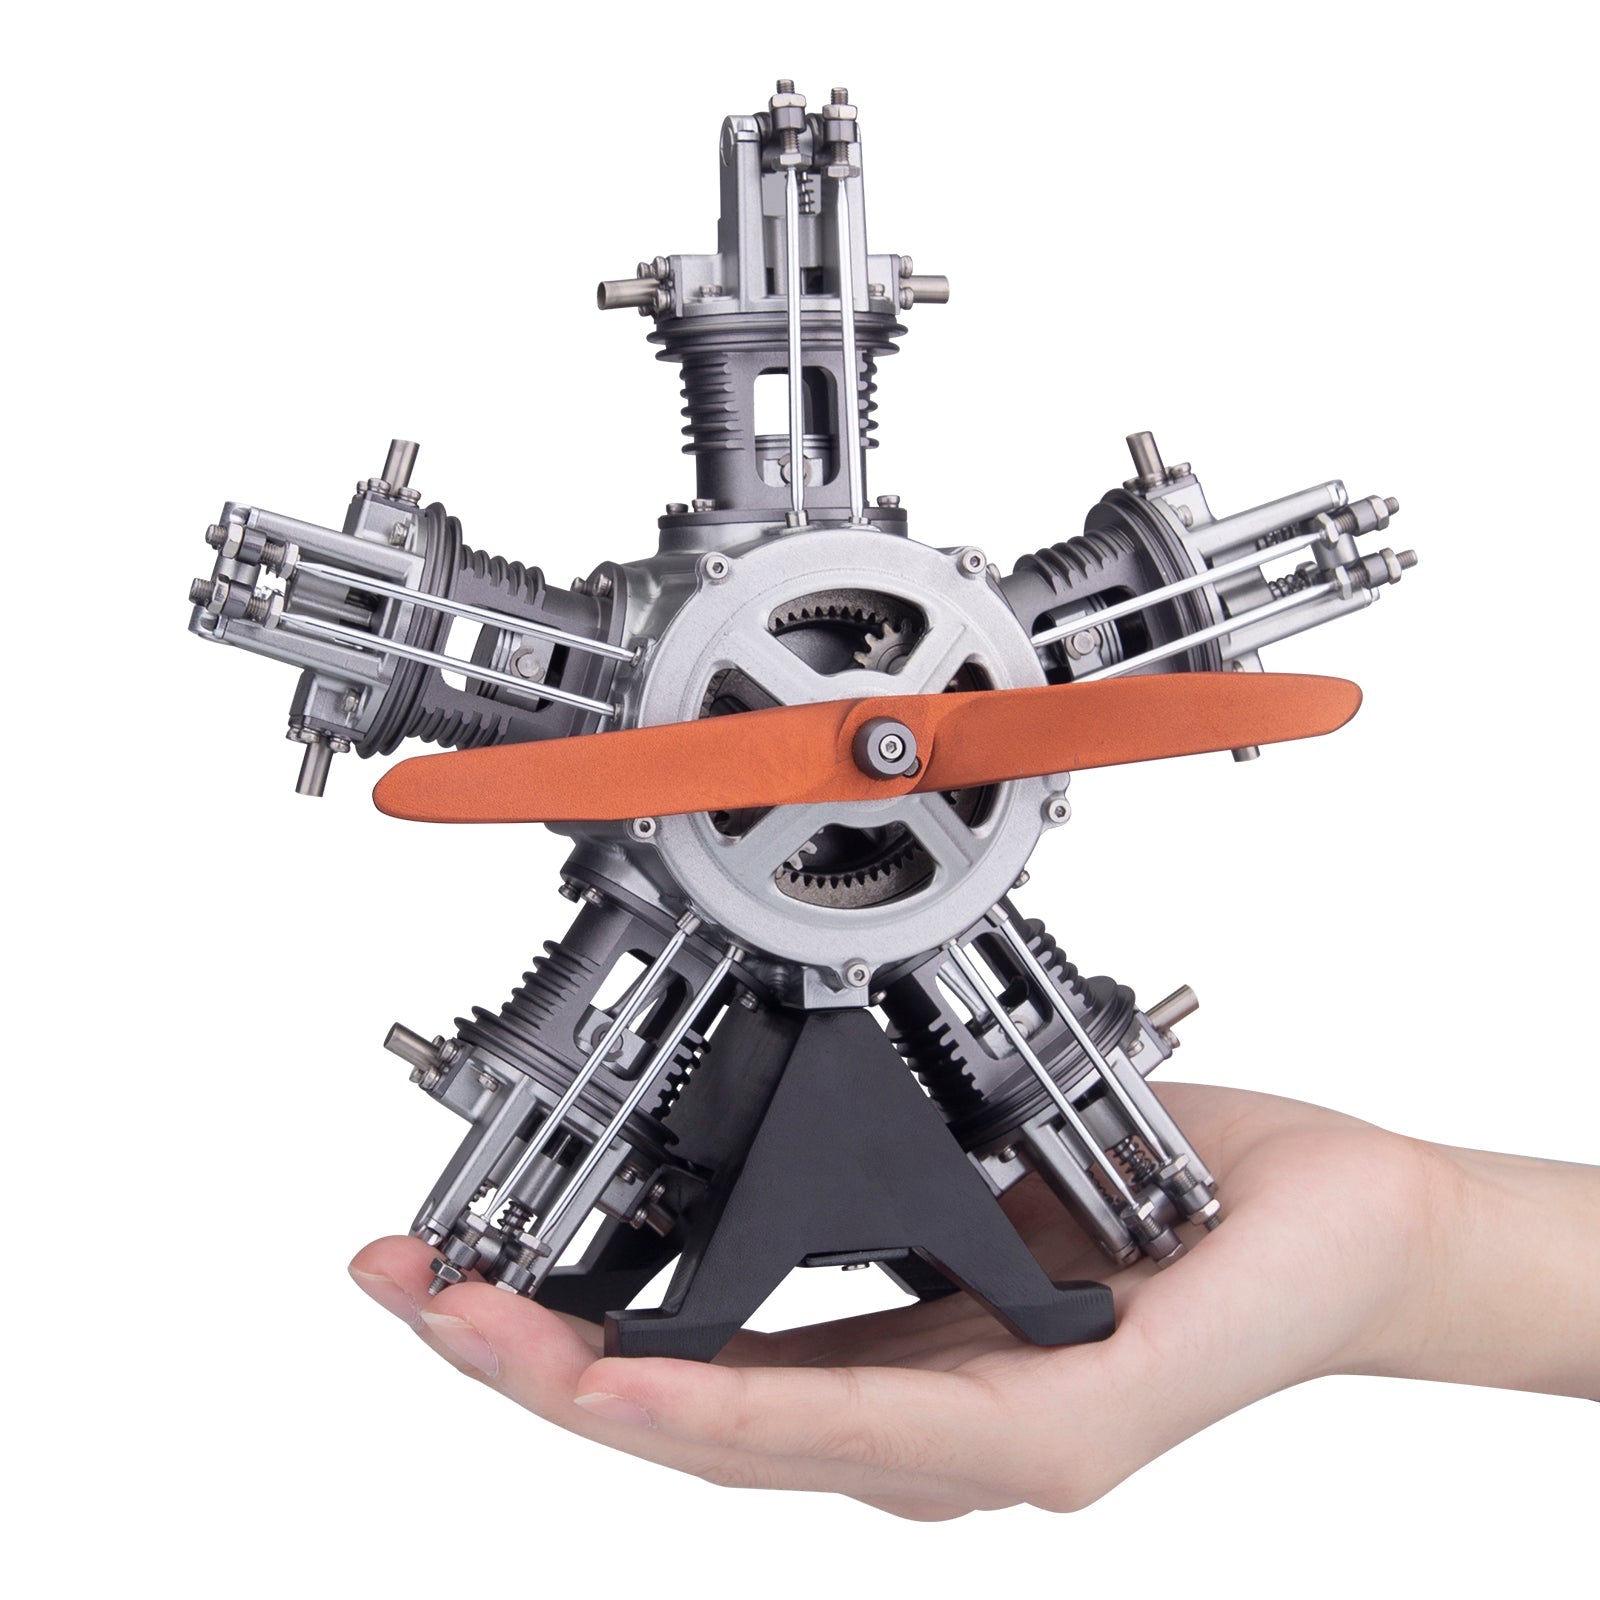 teching radial engine model kit